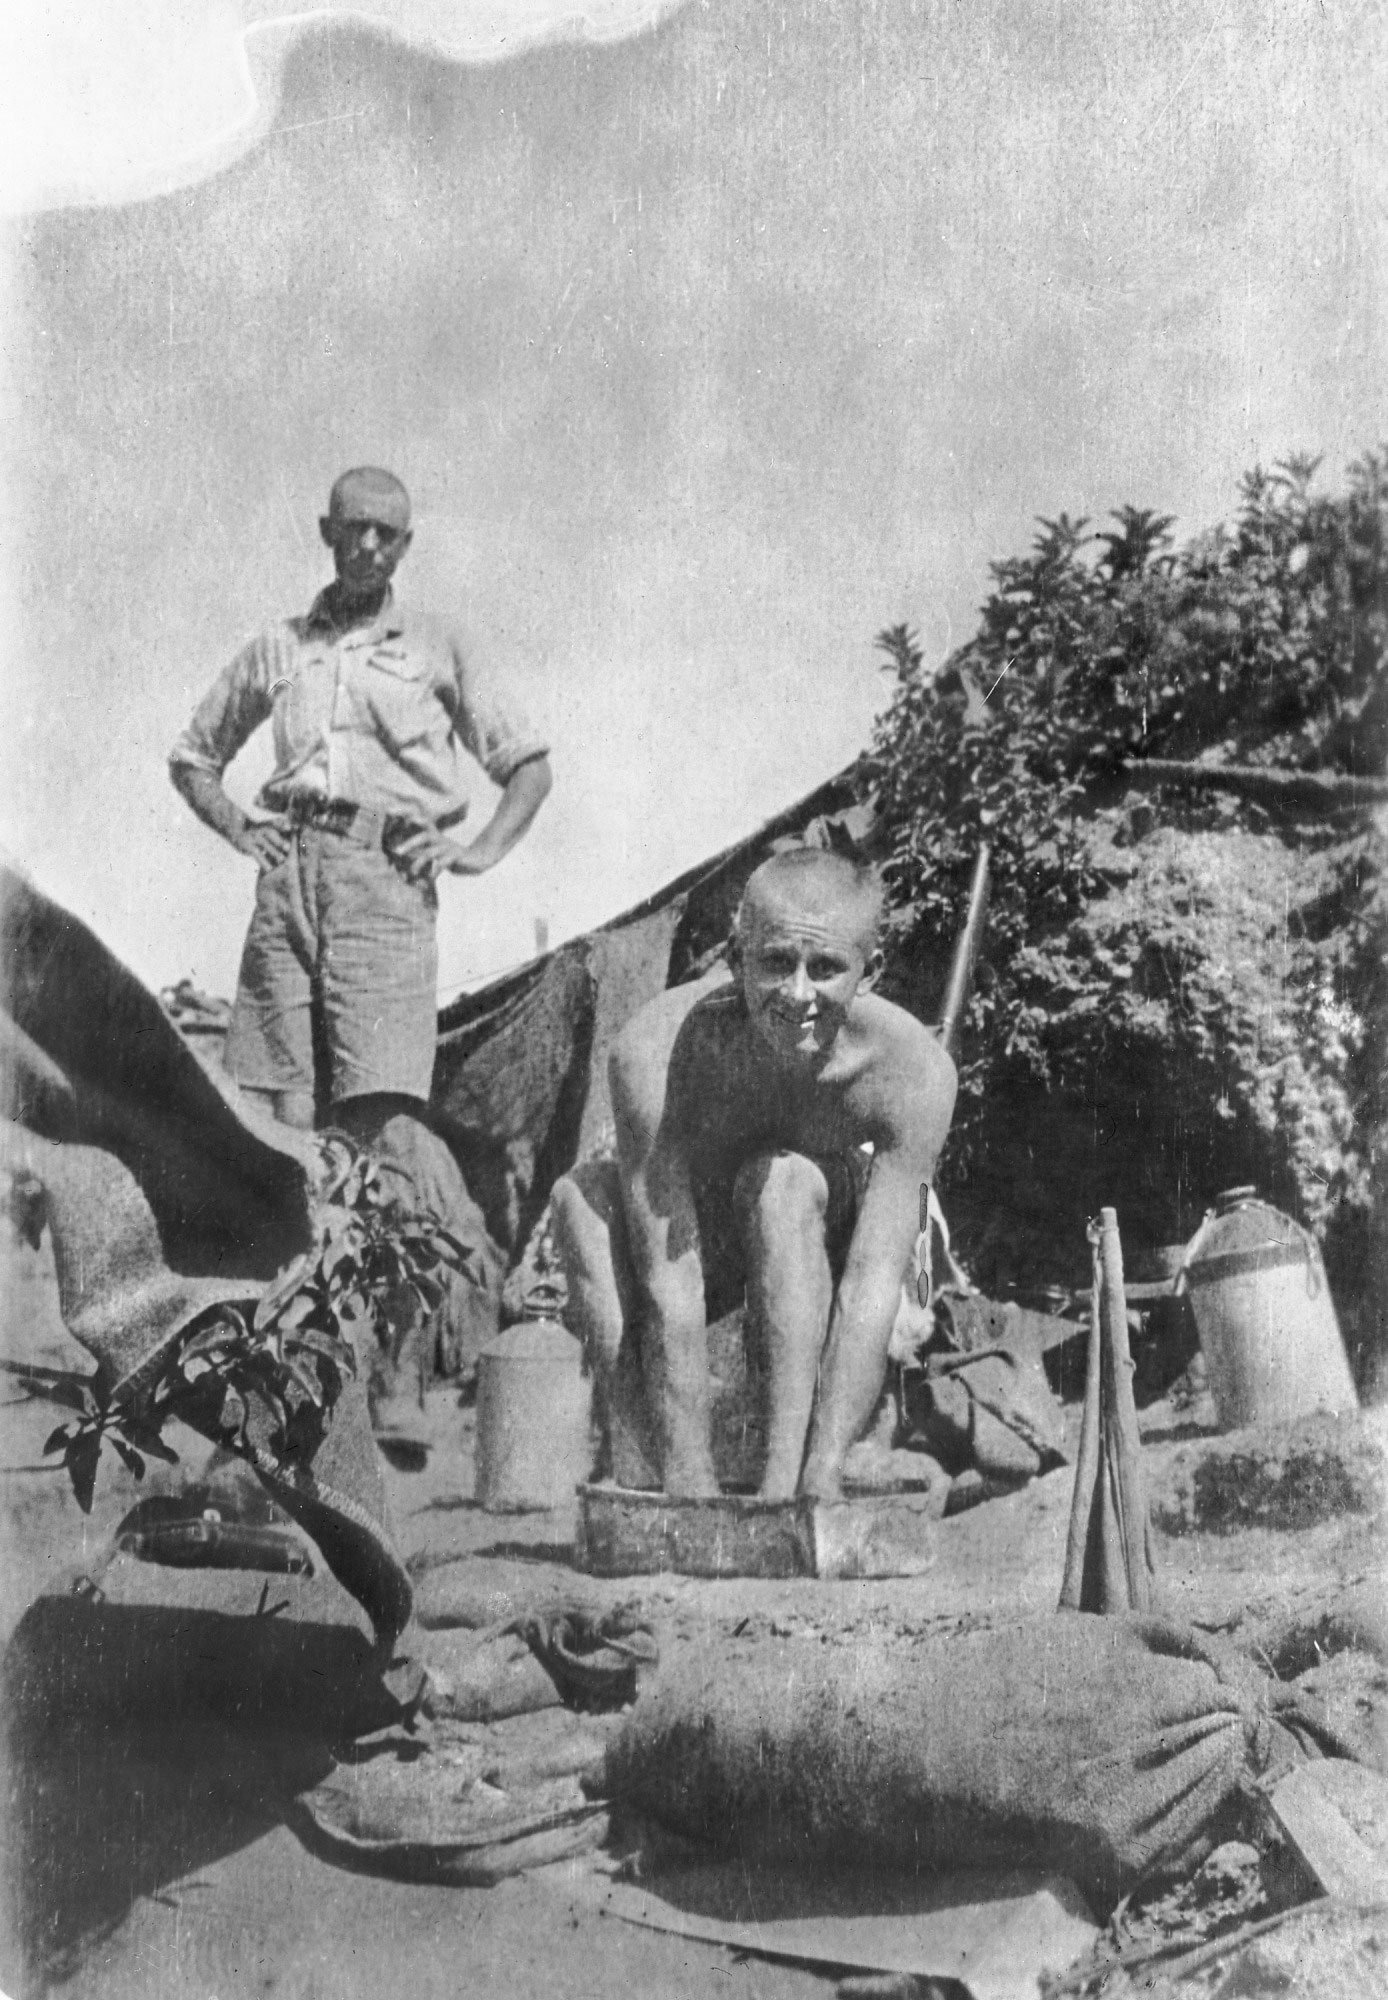 Soldier bathing, Gallipoli, 1915.